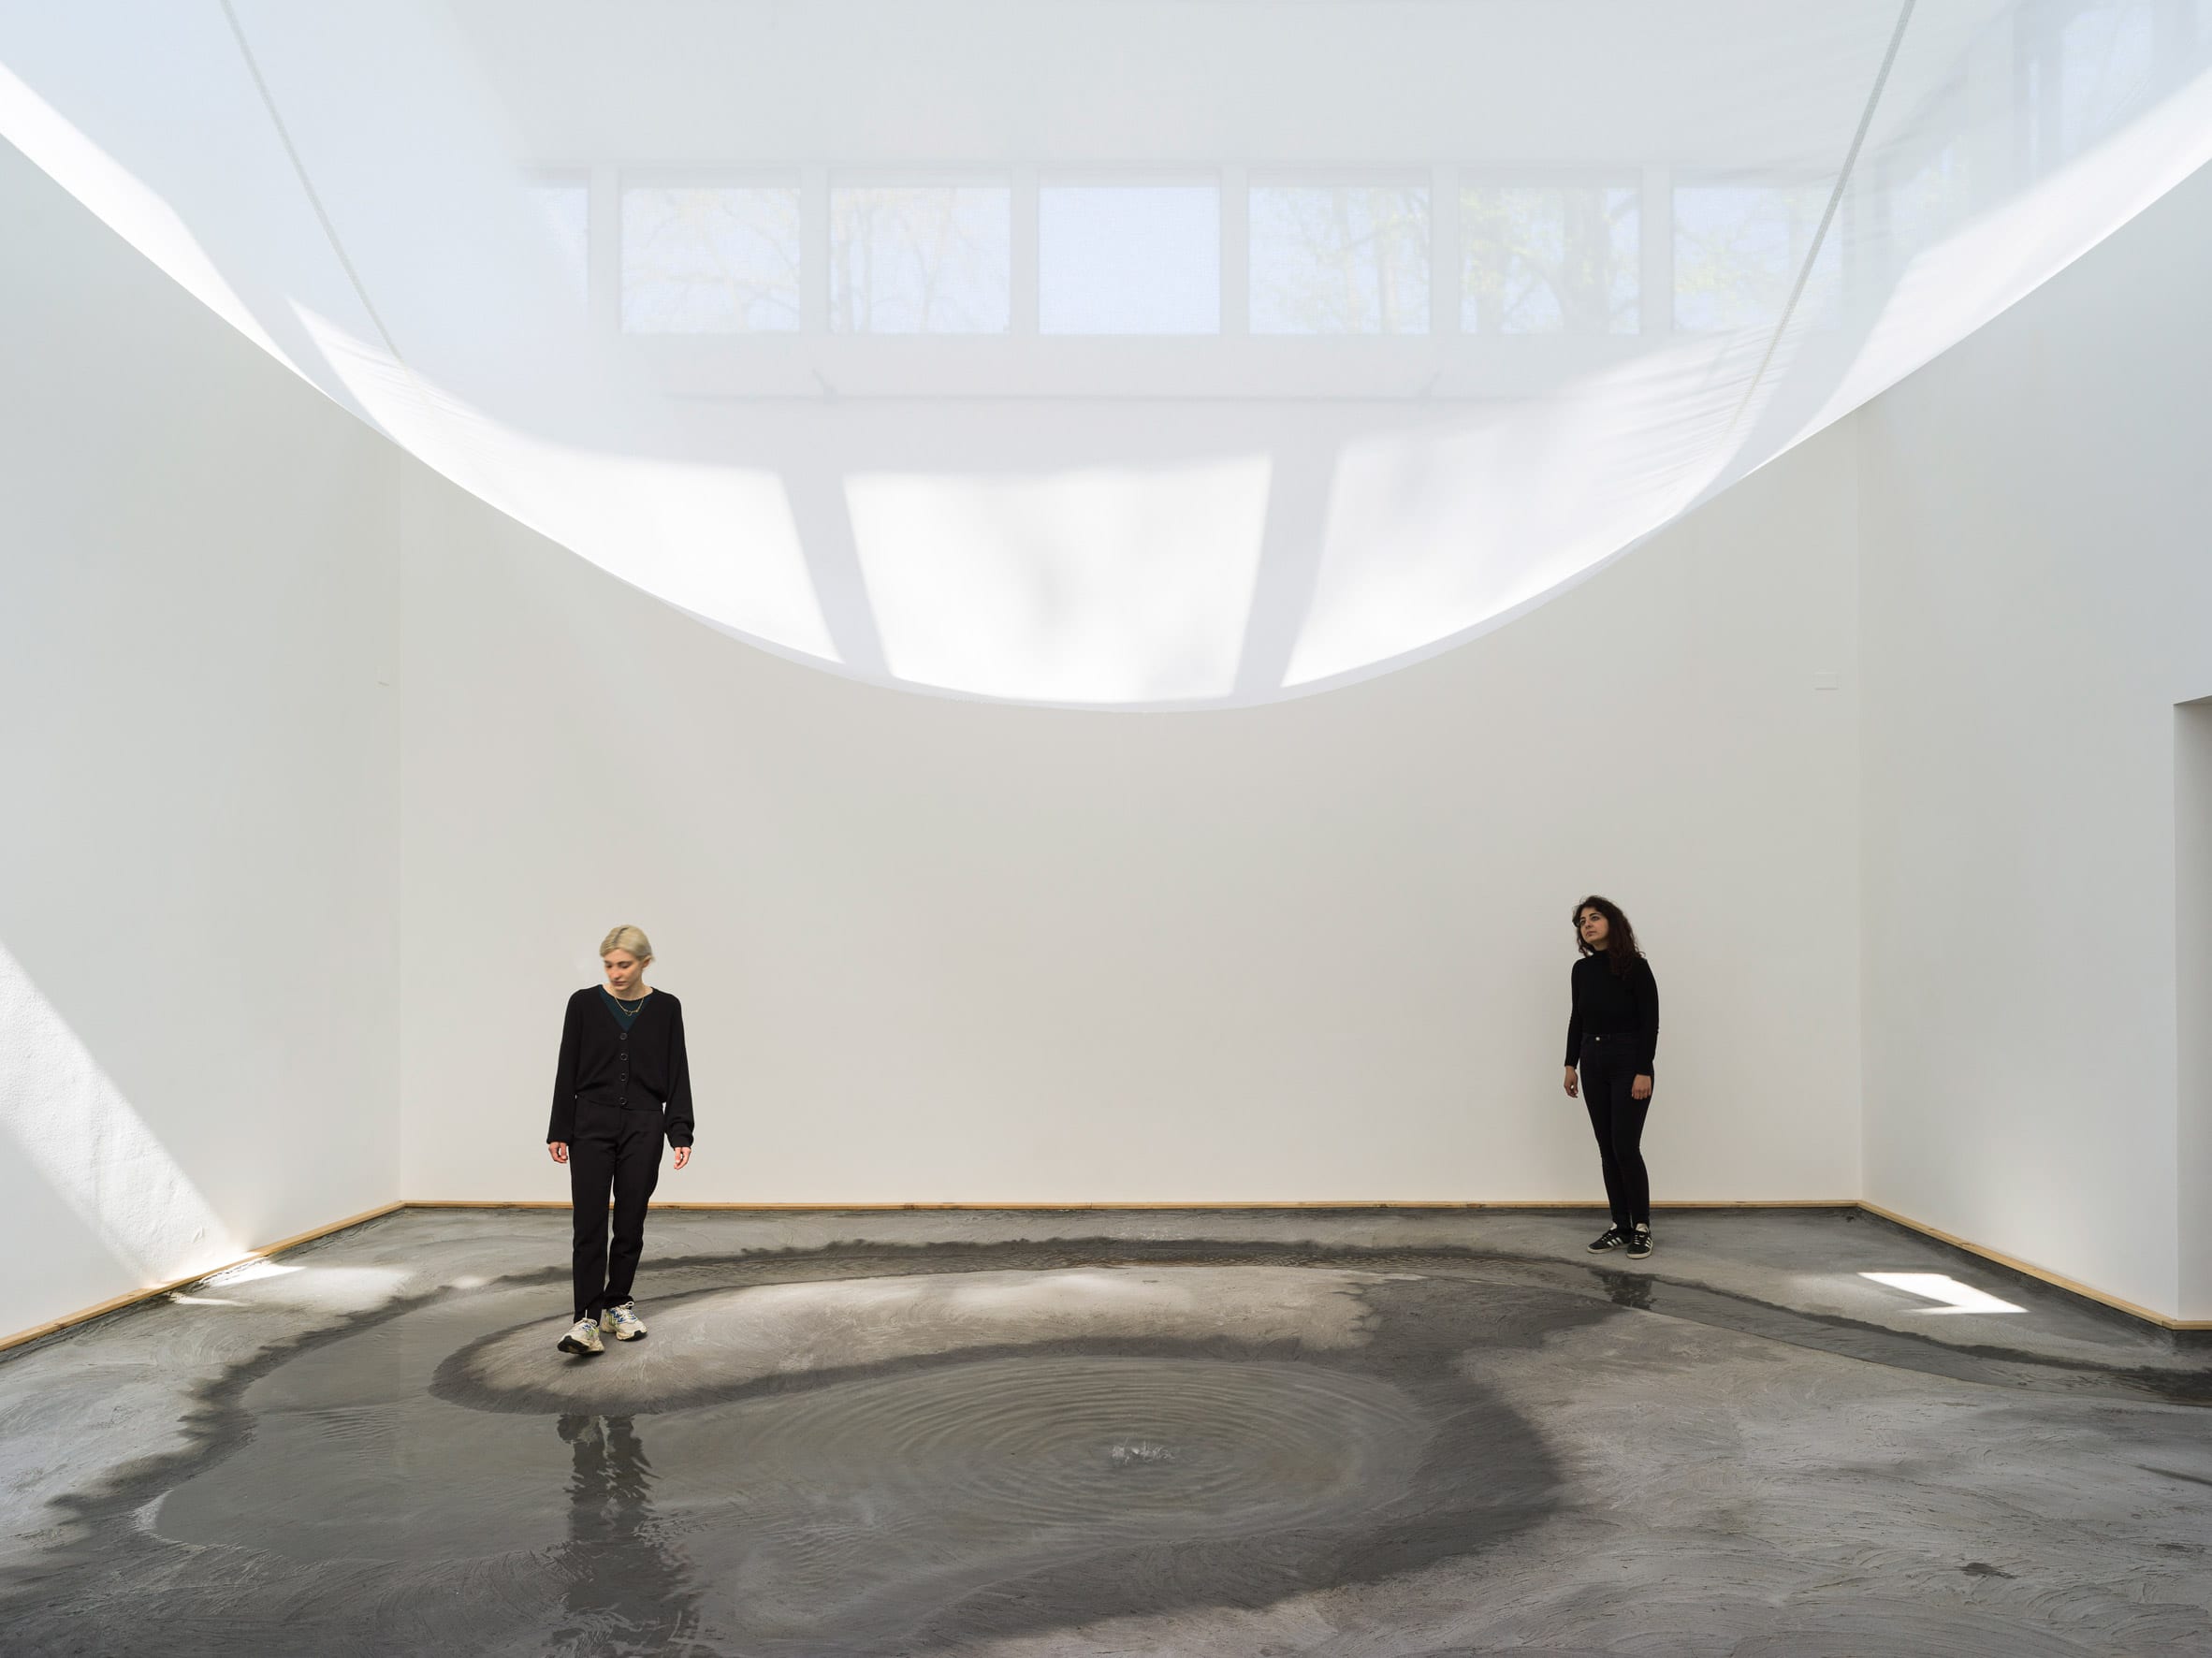 Danish pavilion at Venice Architecture Biennale